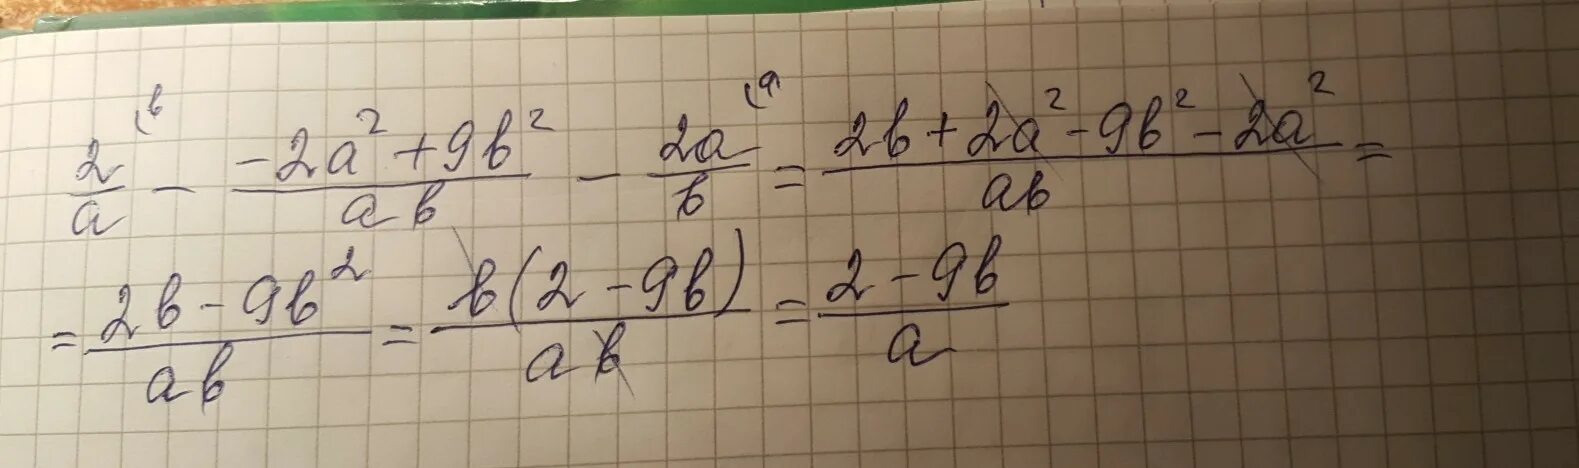 A b деленное на 2. (A-B)^2=(B-A)^2. 2.2. Упростите выражение a 2 ab− b 2 + b b−a. Упростить выражение 2) ¬(a ∨ ¬b) ∨ ¬ (a ∨ b) ∨ a ∧ b. (A2+b2)(a2-b2).